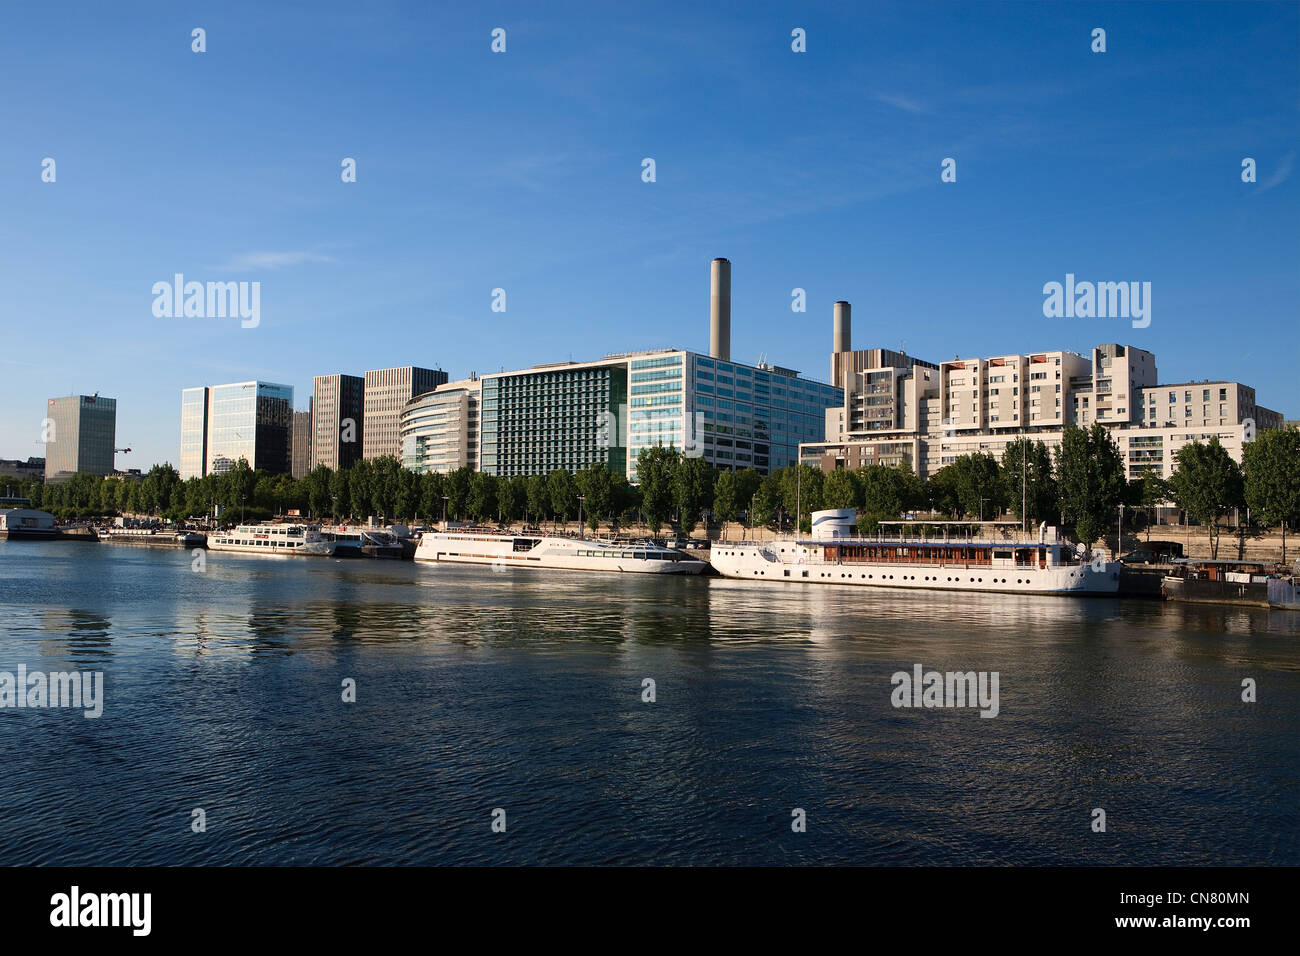 France, Paris, boats on Quai de Bercy and business district of Gare de Lyon Stock Photo